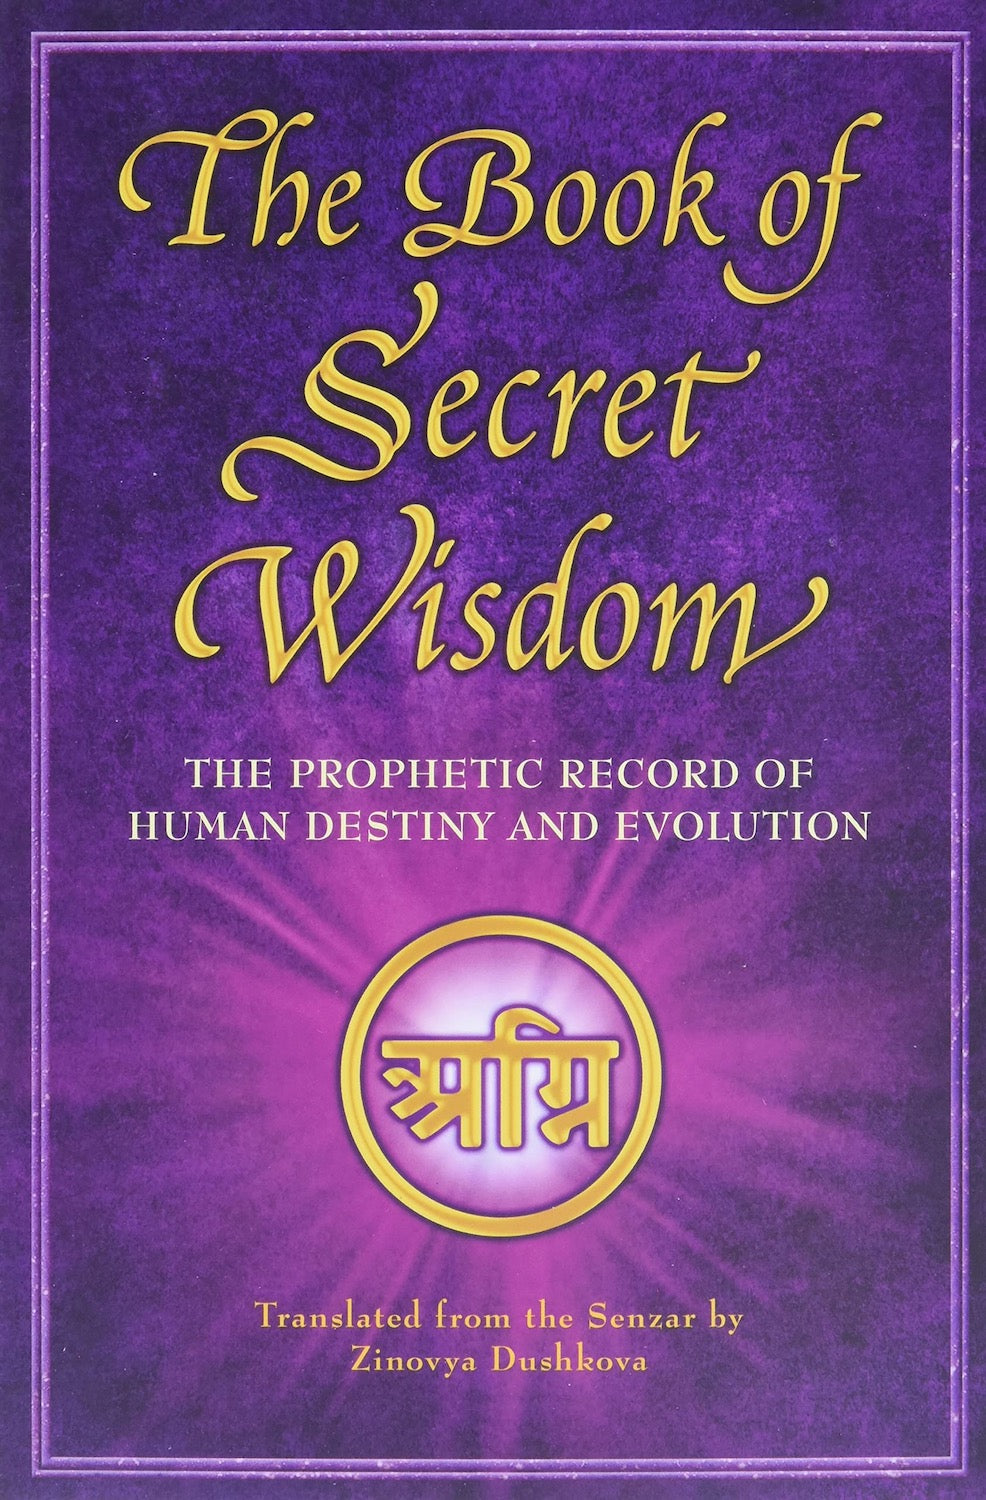 The book of secret wisdom: 599054314X